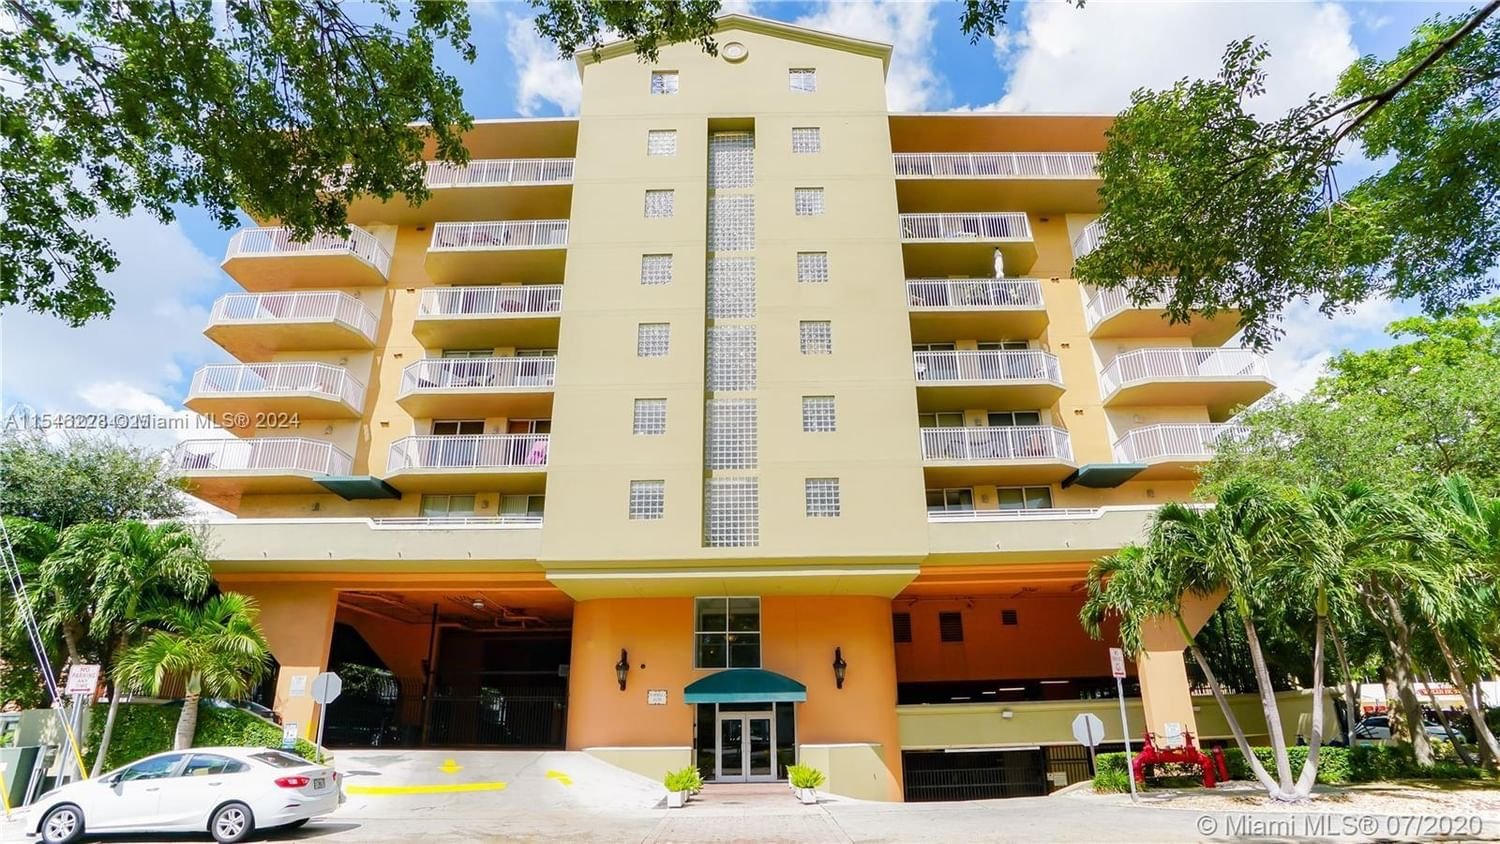 Real estate property located at 1650 Coral Way #807, Miami-Dade County, MARBELLA CONDO, Miami, FL